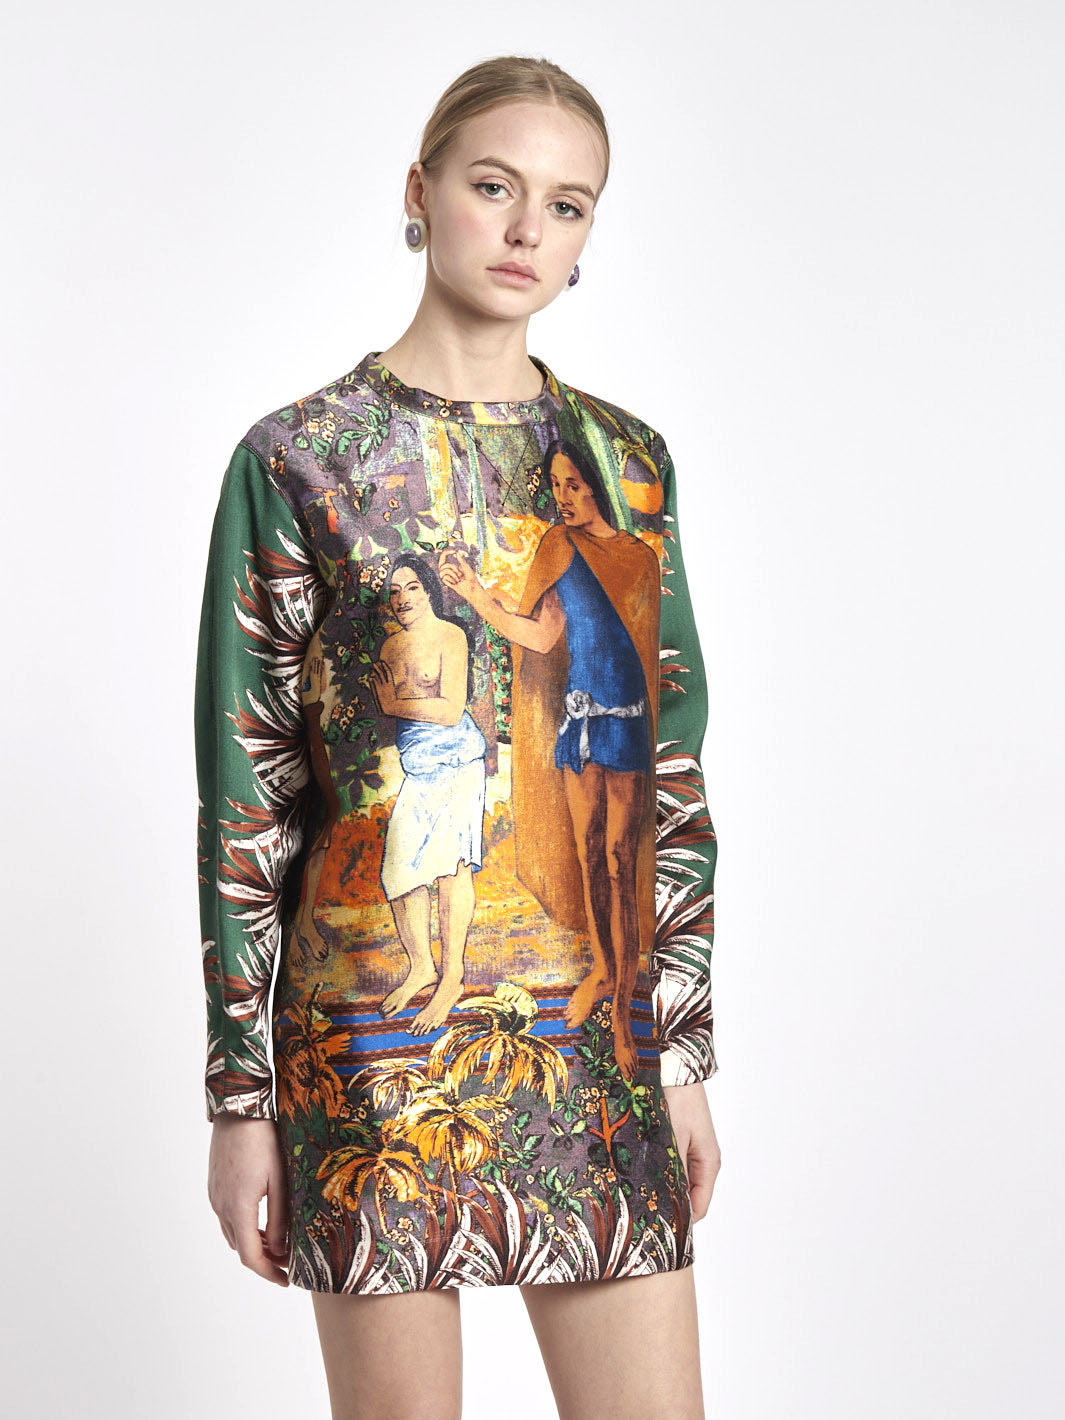 2010 Aquilano Rimondi minidress with Gaugin-inspired print